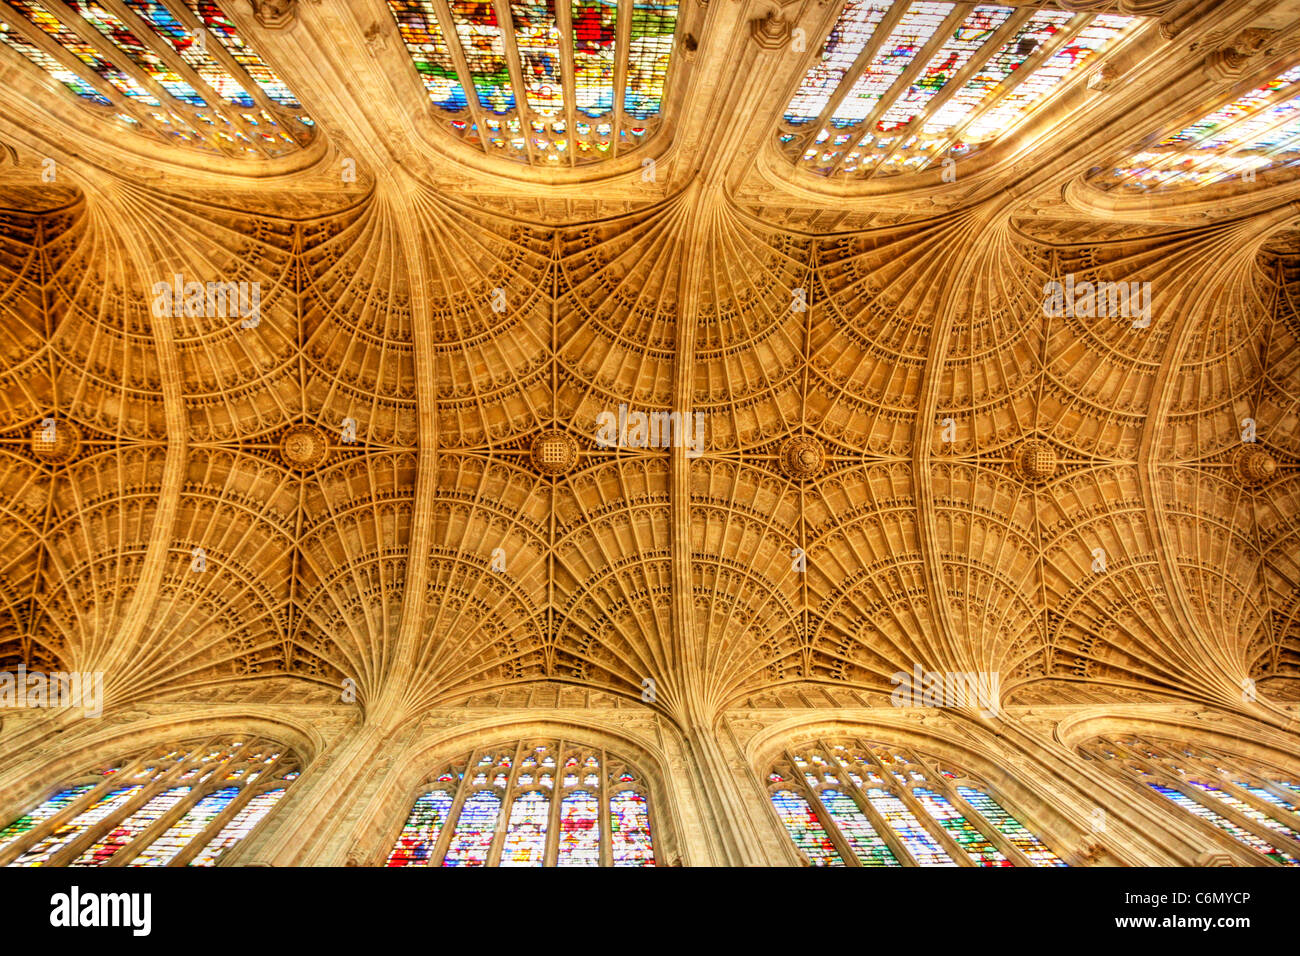 Vue de dessous du ventilateur au plafond voûté au Kings College, Université de Cambridge Banque D'Images